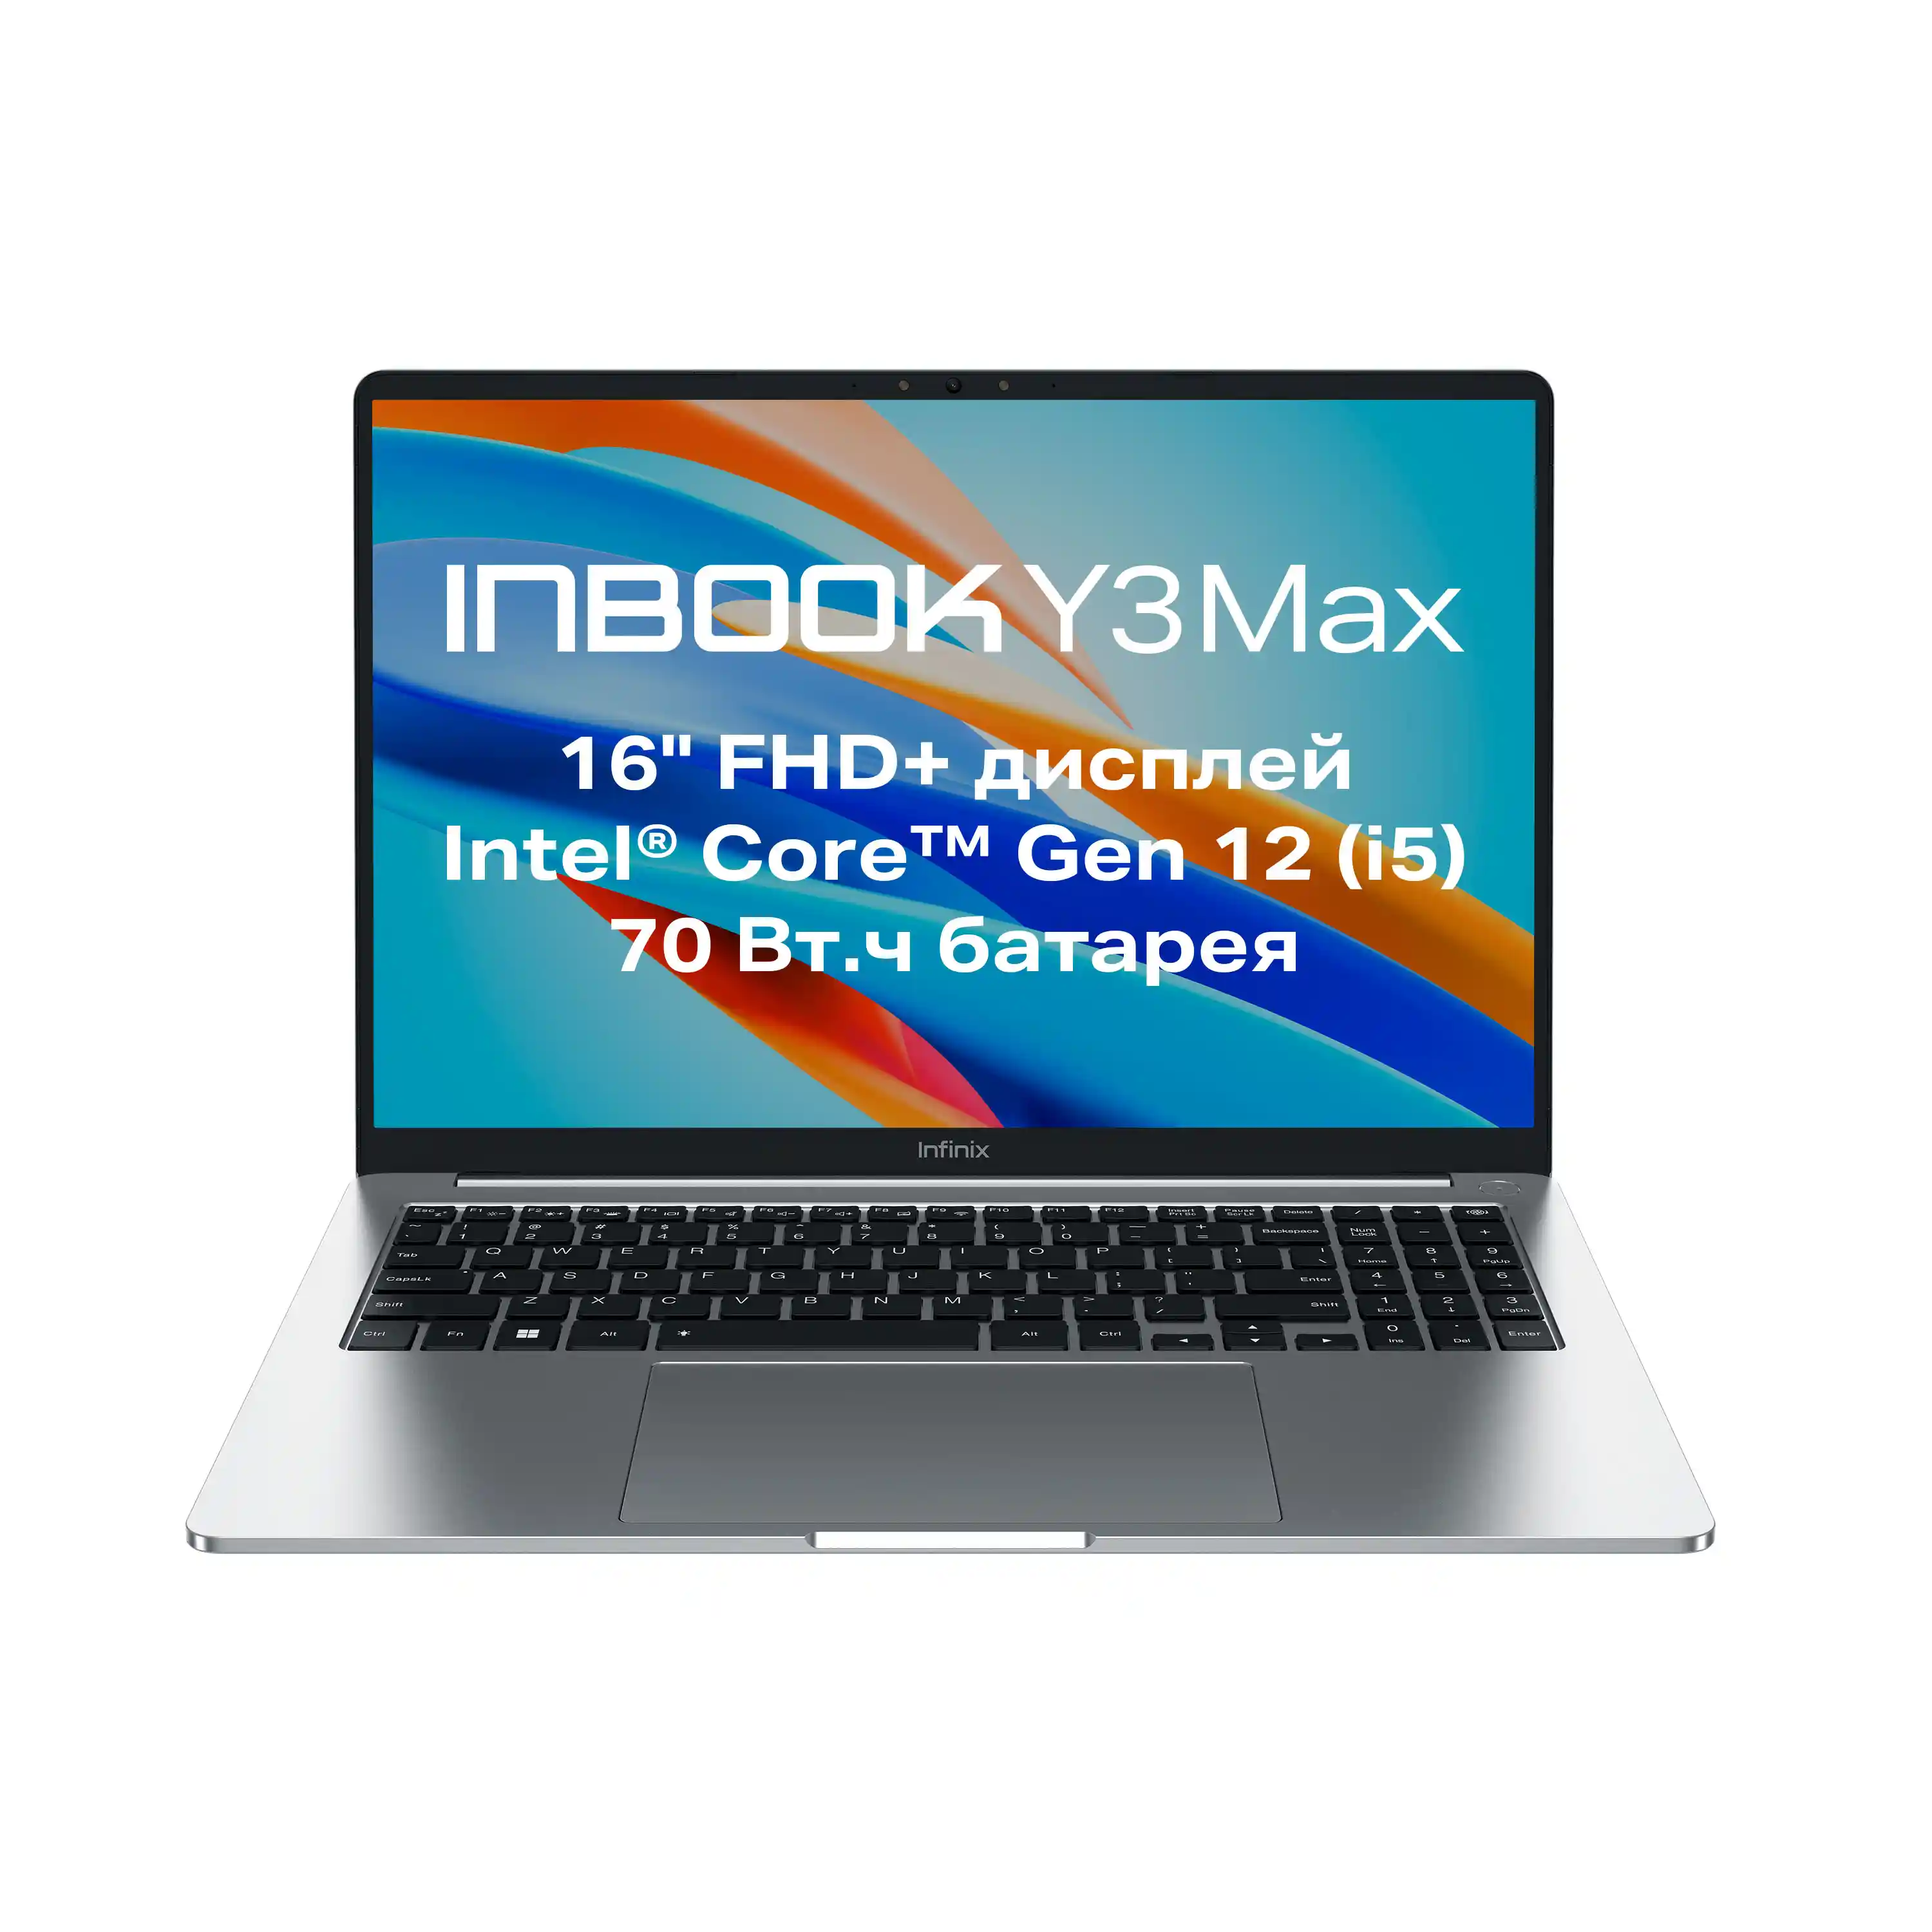 Ноутбук INFINIX Inbook Y3 Max YL613 16" (71008301535)